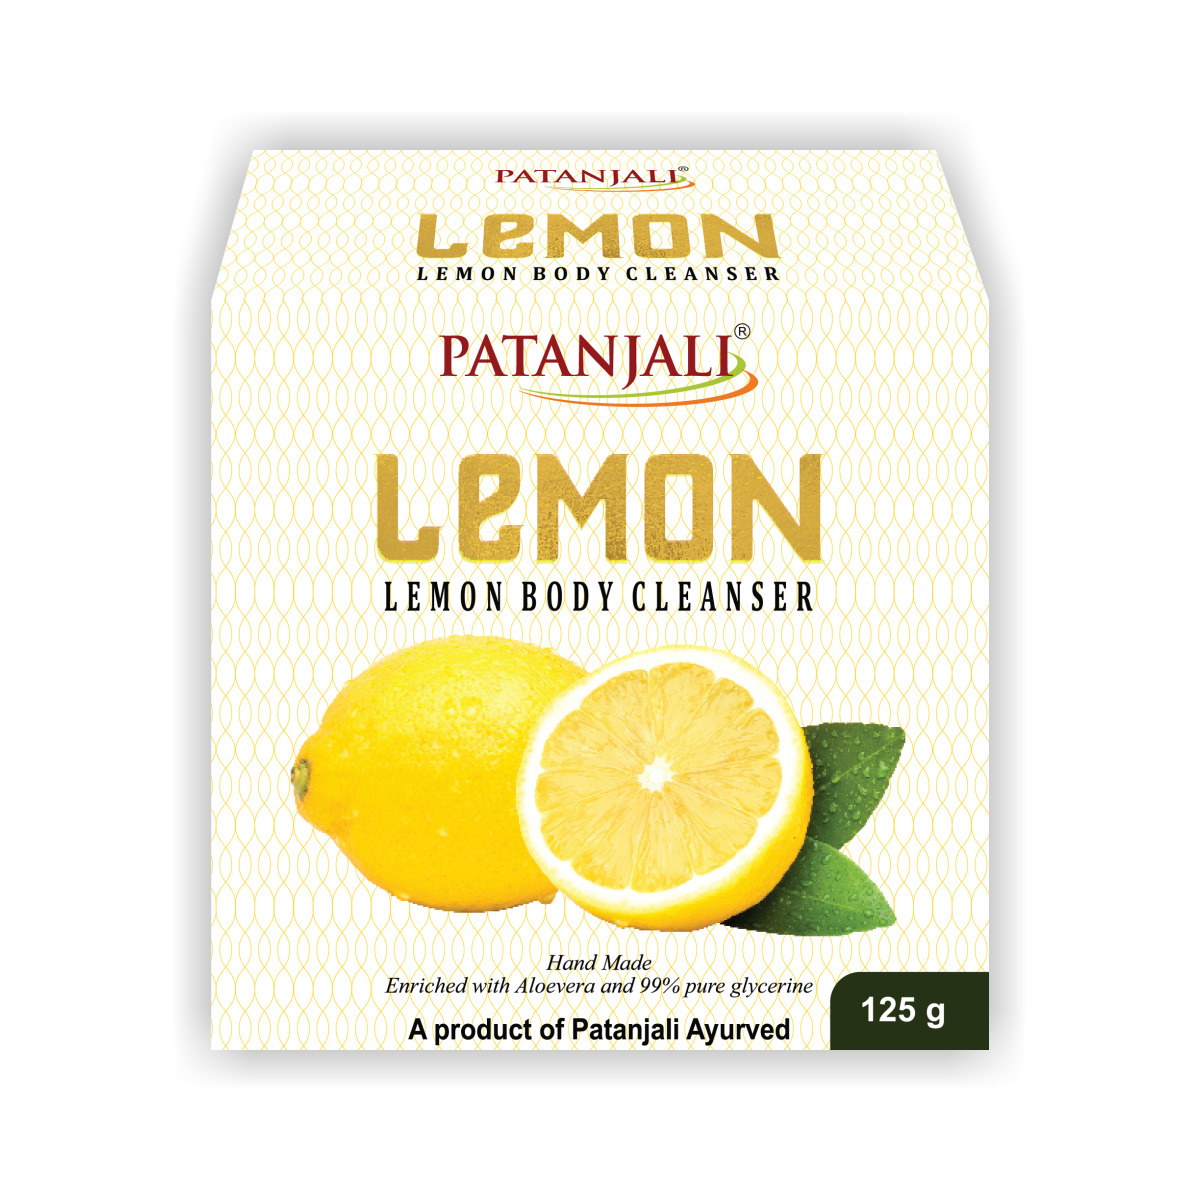 Patanjali Lemon Body Cleanser